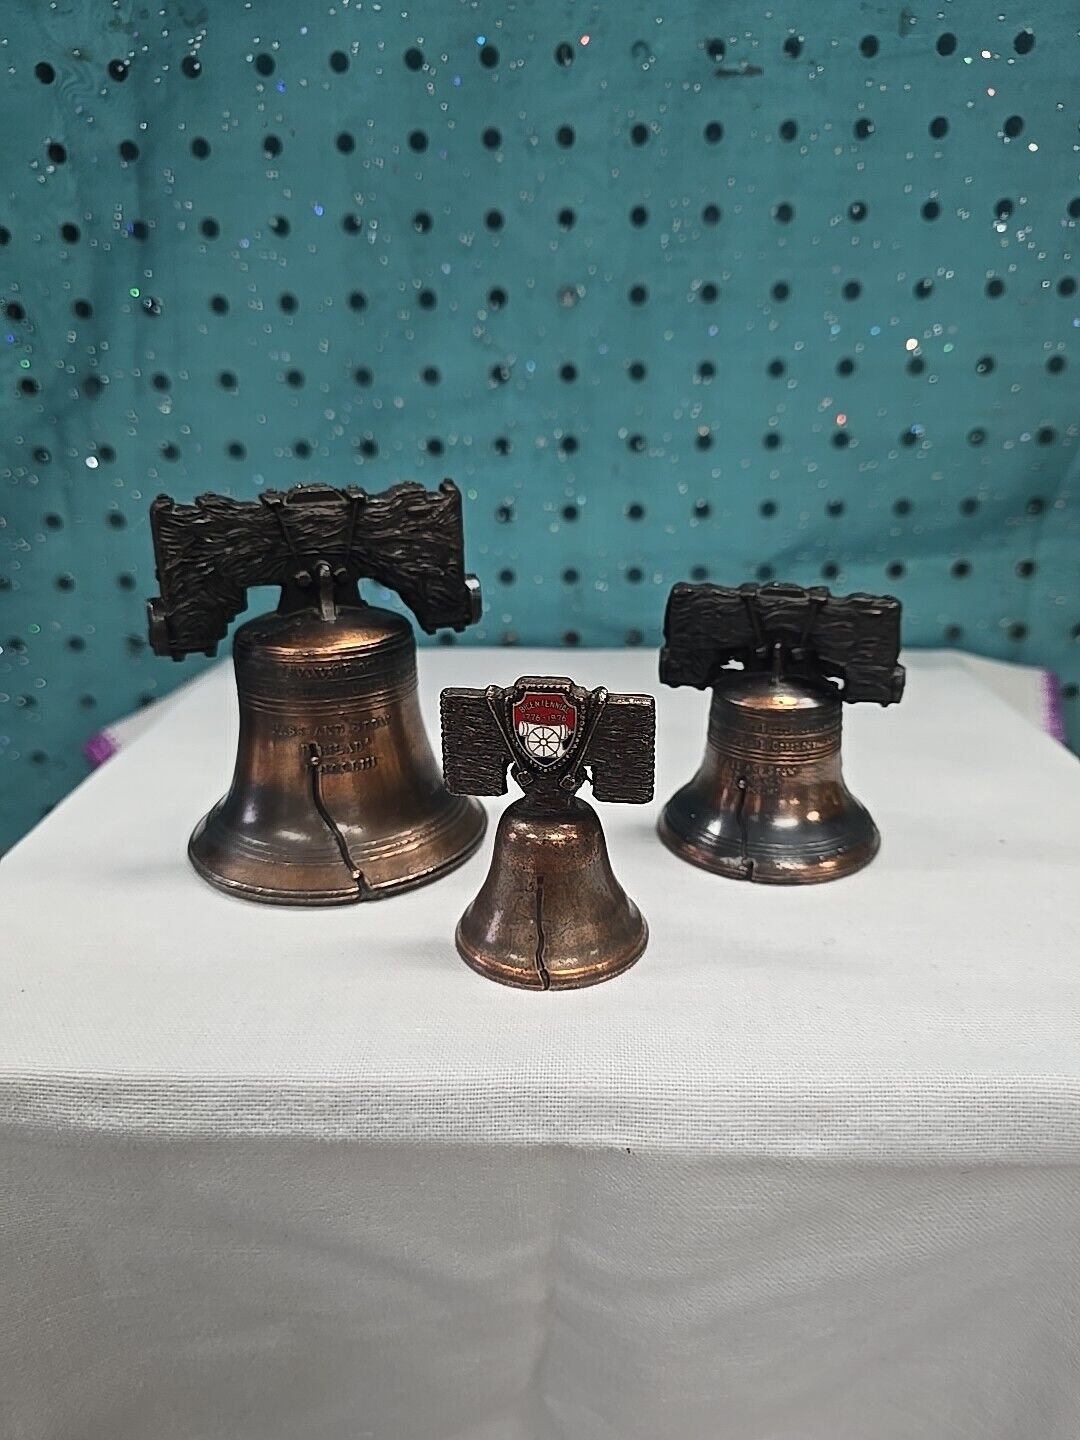 3 Miniature Liberty Bells: (1) 2 1/2 